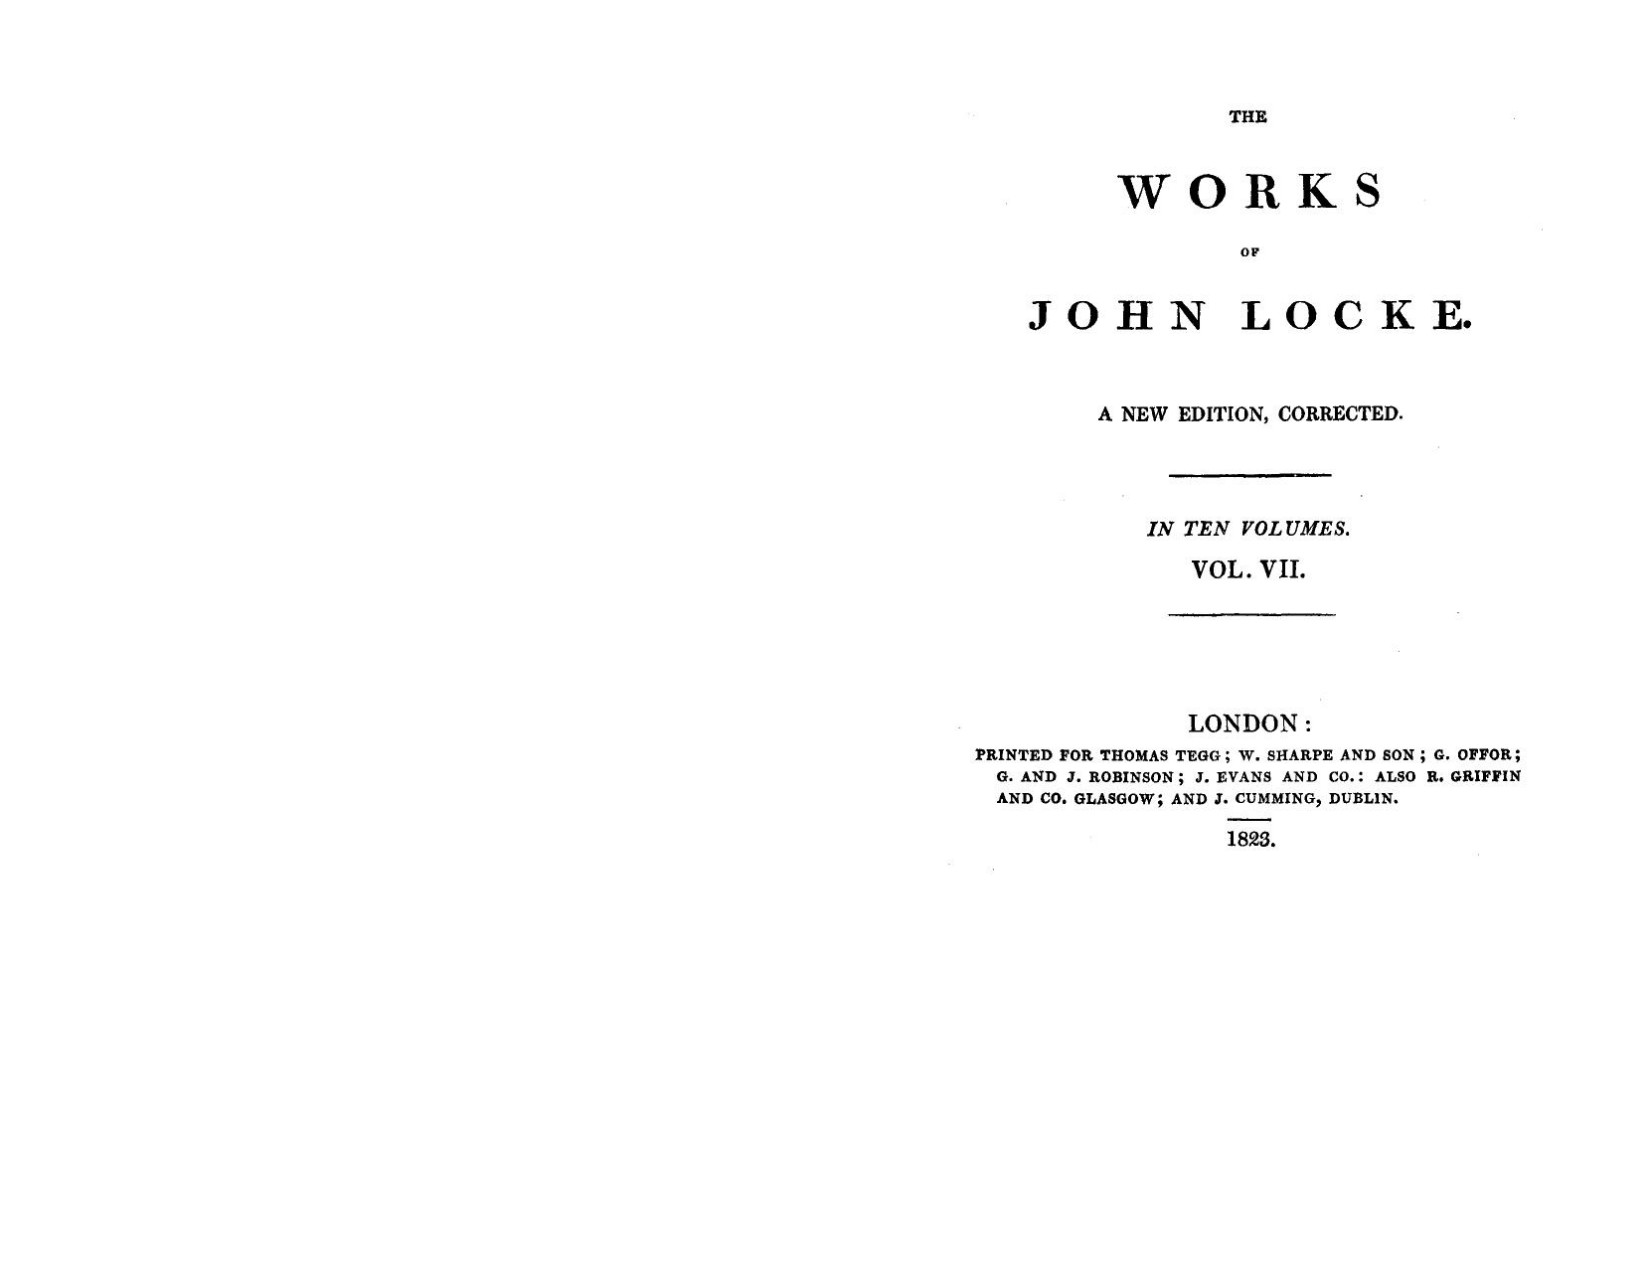 The works of John Locke 07 by John Locke